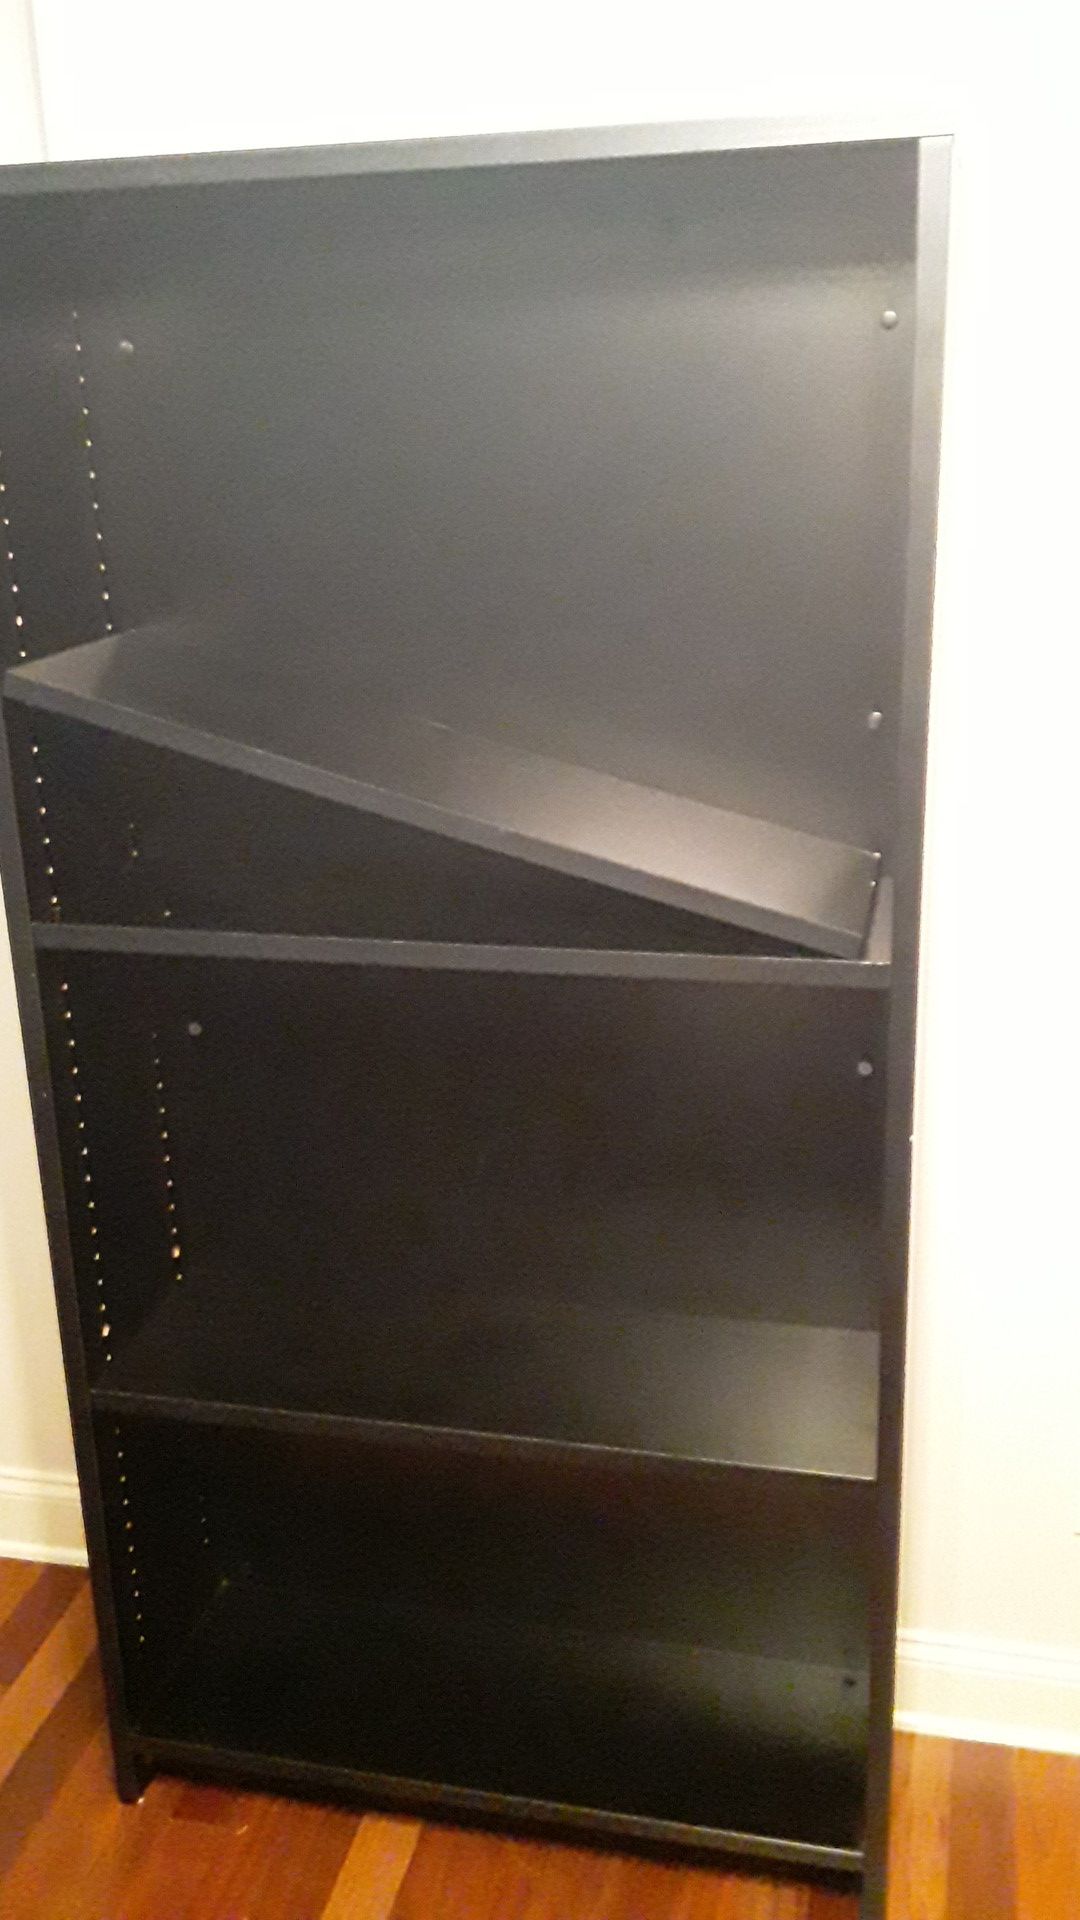 5 1/2 foot tall black bookshelf